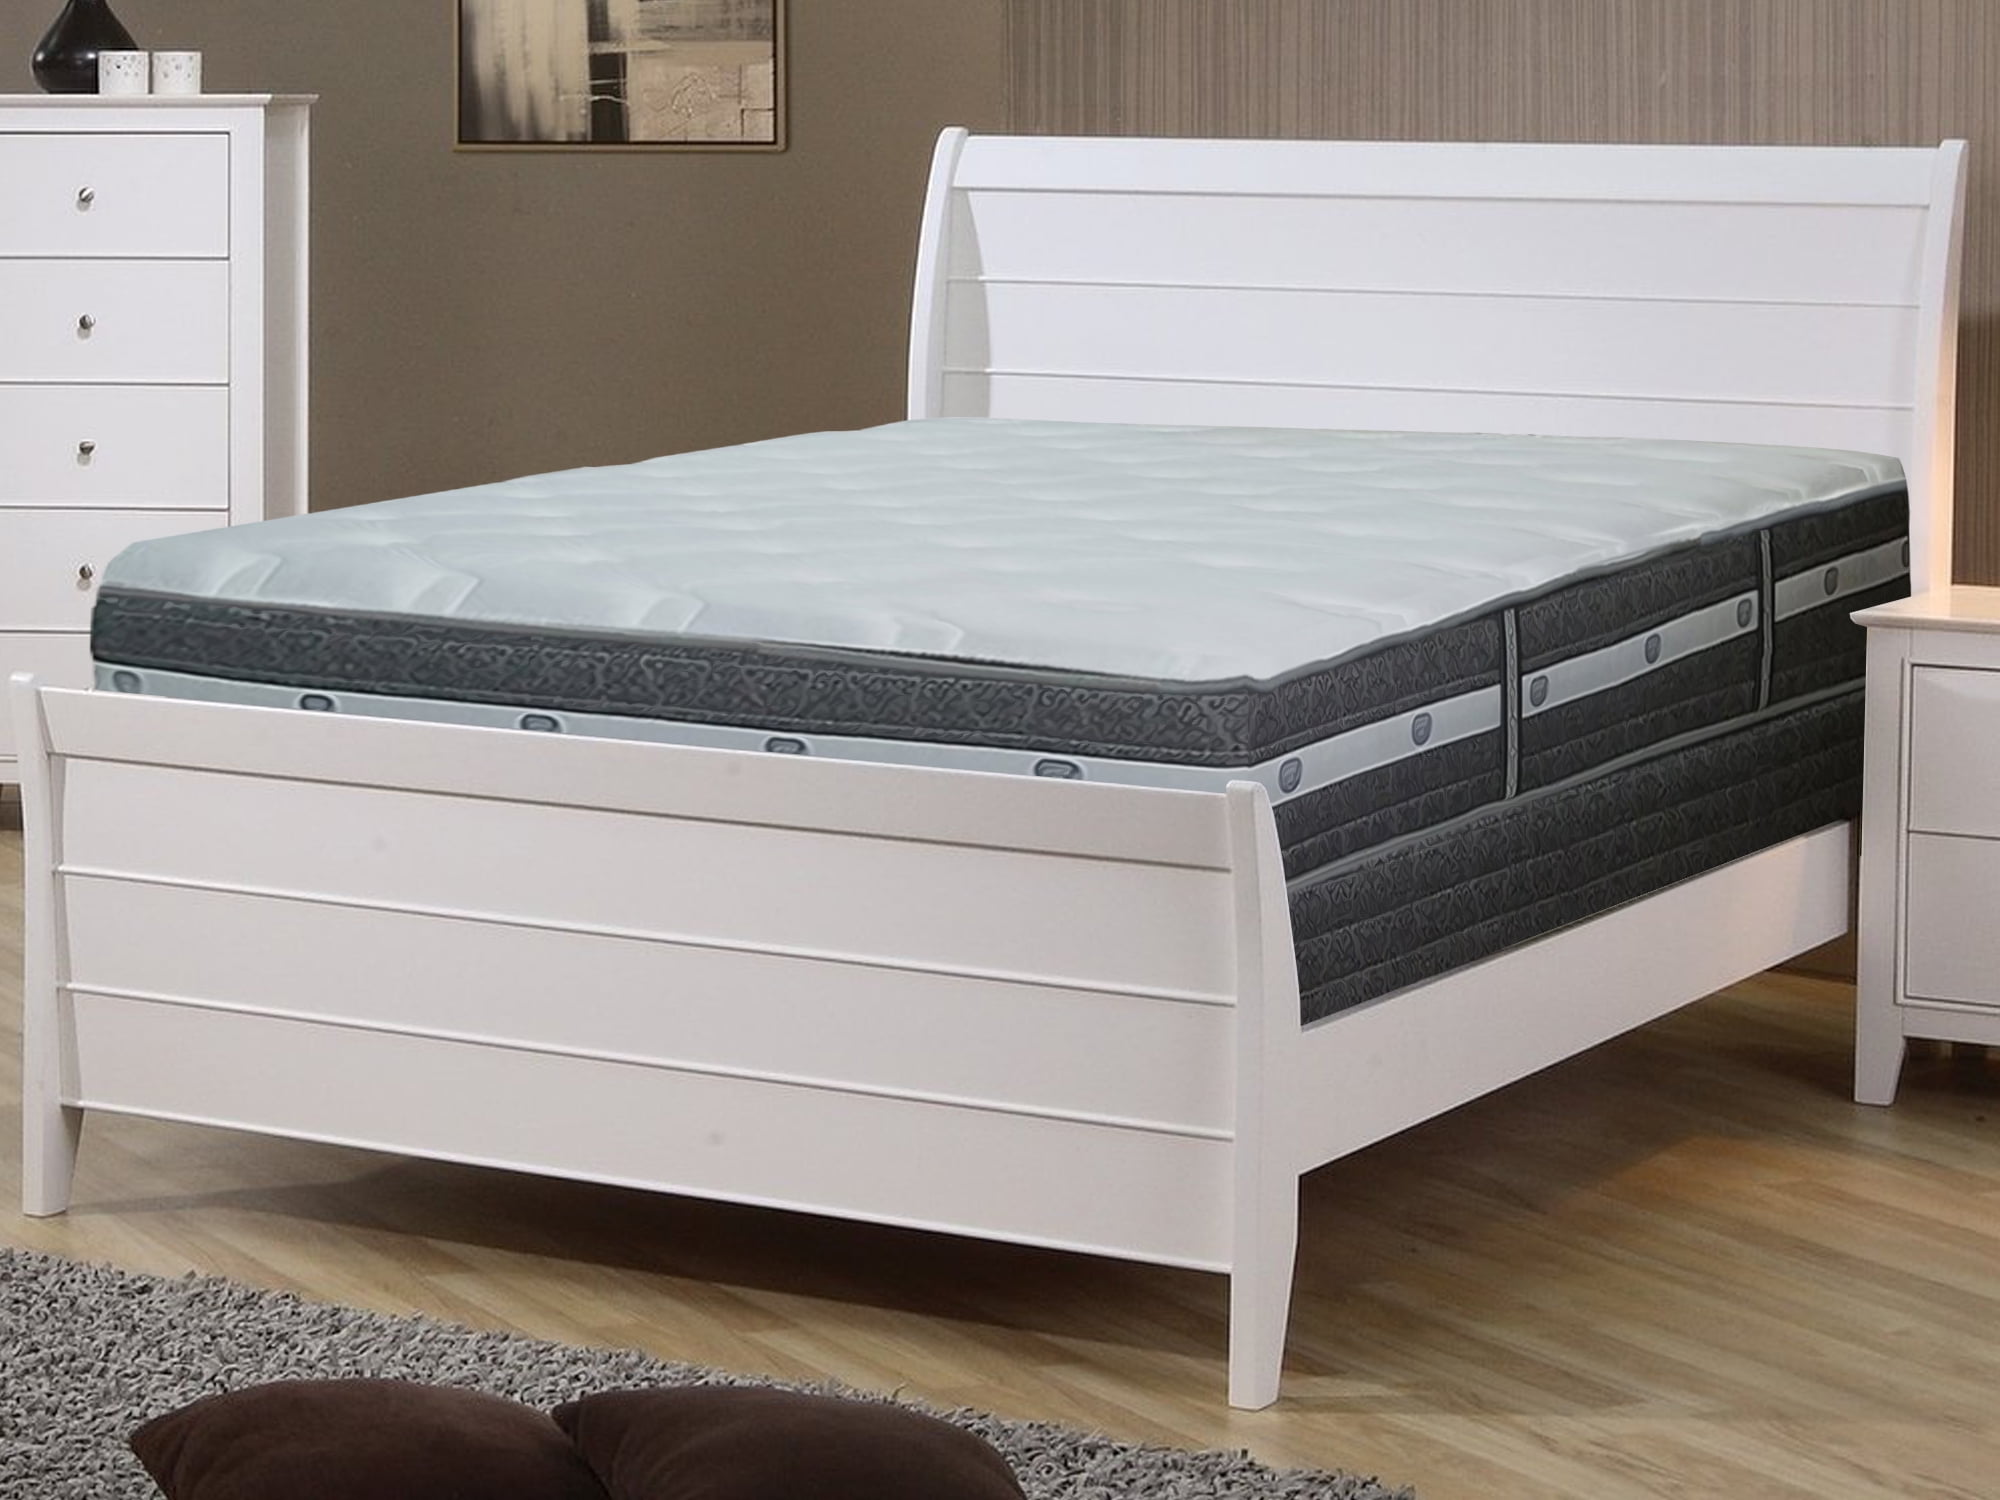 55 inch long bed mattress